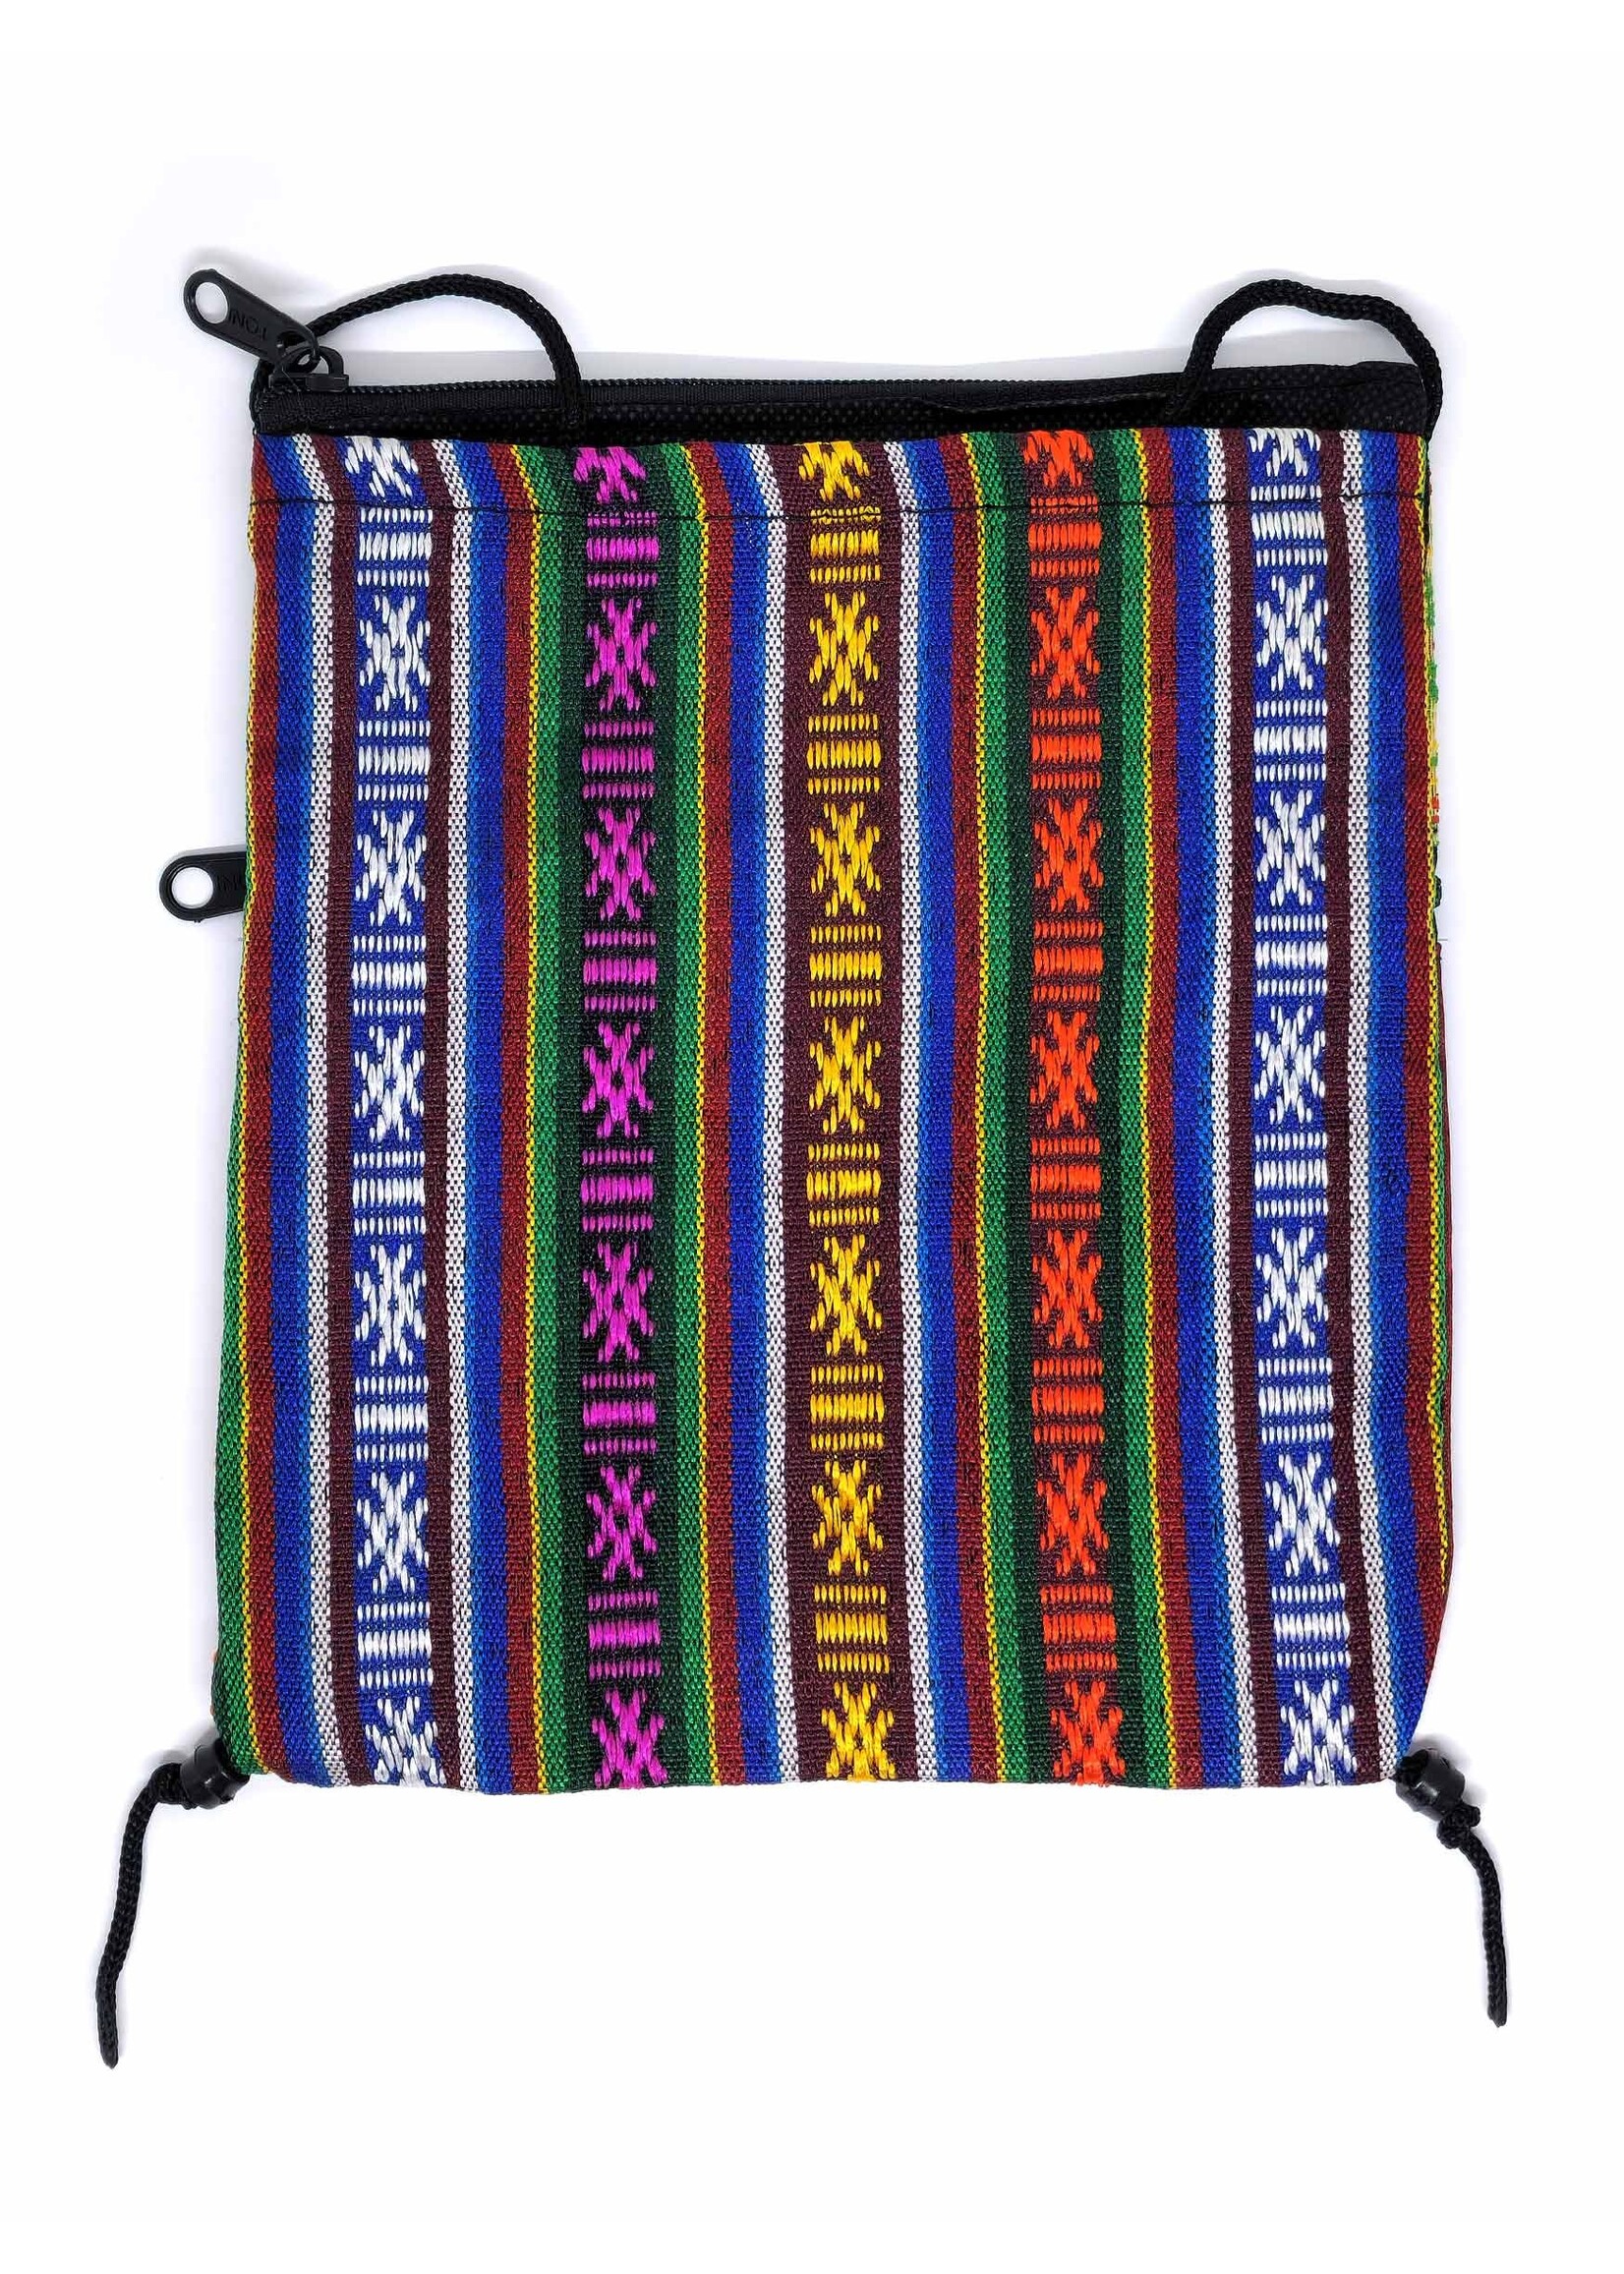 Piccola borsa a tracolla in broccato di seta tibetana con mandala, marrone